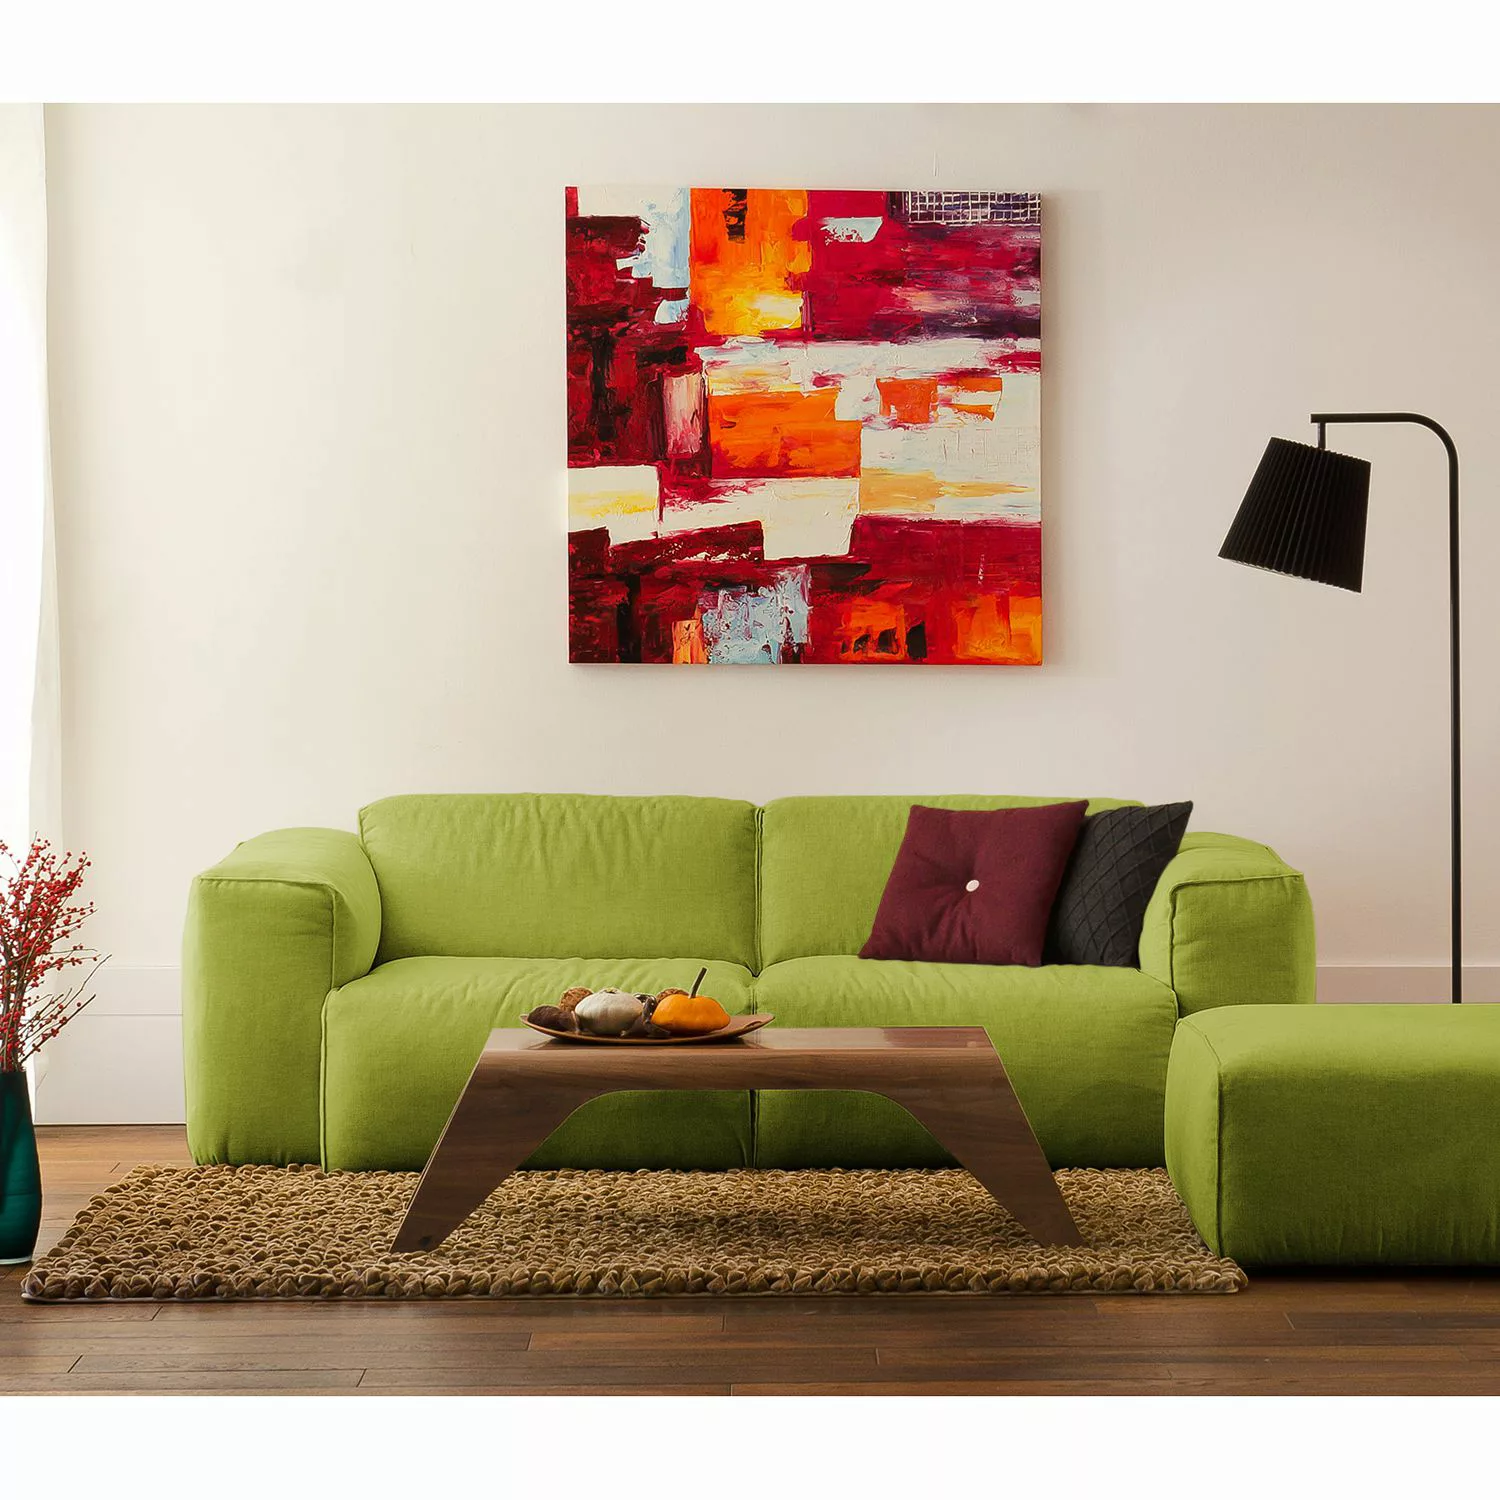 home24 Studio Copenhagen Sofa Hudson 2-Sitzer Grün Webstoff 228x71x102 cm ( günstig online kaufen